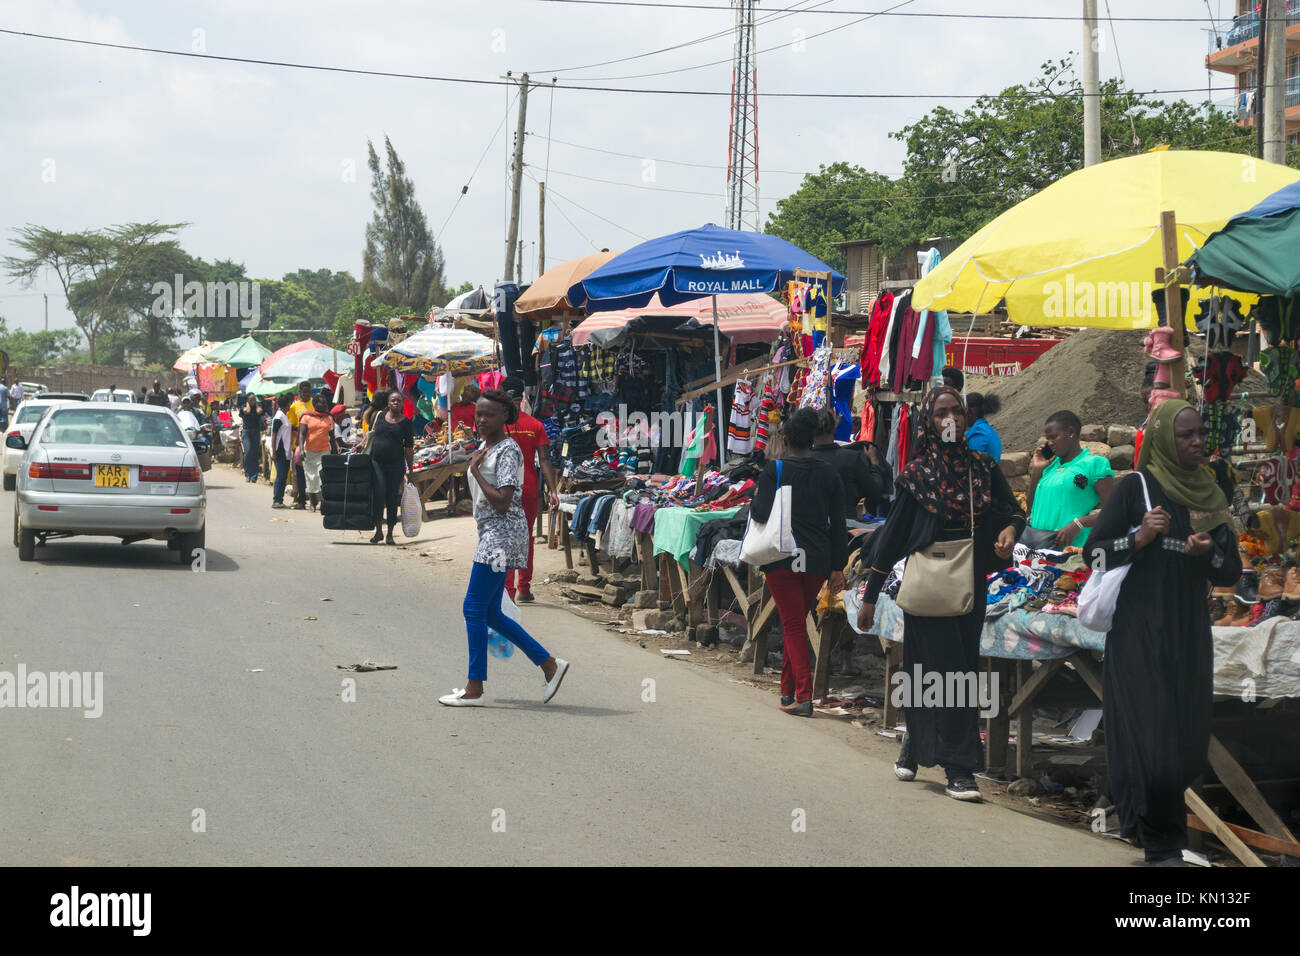 Les petits étals de marché line le côté de la route avec les personnes qui s'y passé, Nairobi, Kenya, Afrique de l'Est Banque D'Images